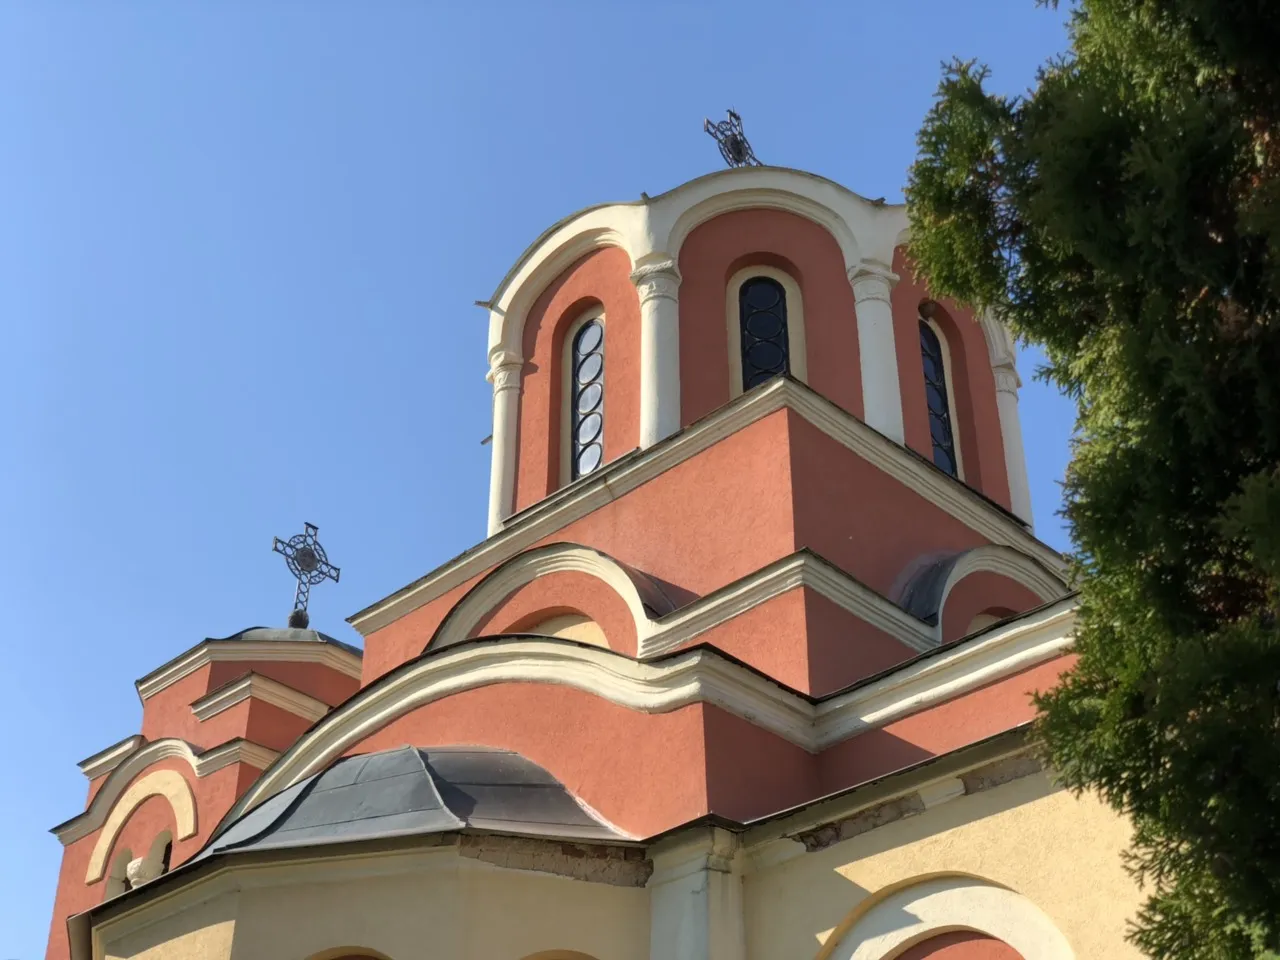 Fasada crkve, foto: D. Miladinović